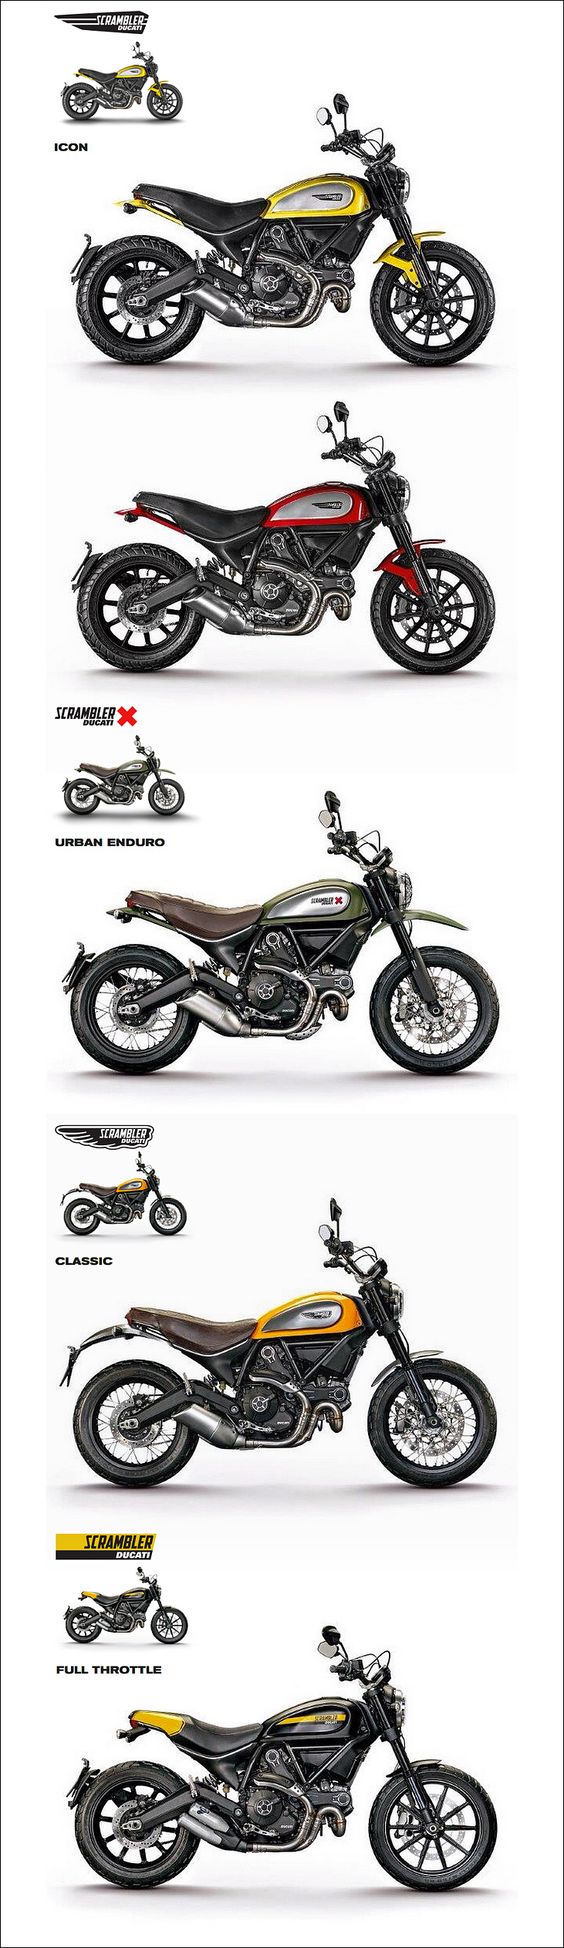 Ducati Scrambler 2015 ! 800cm3 - 75 ch ( kW) à 8 250 tr/min et  m/kg à 5 750 tr/min, 6 vitesses - 192kg tout pleins faits